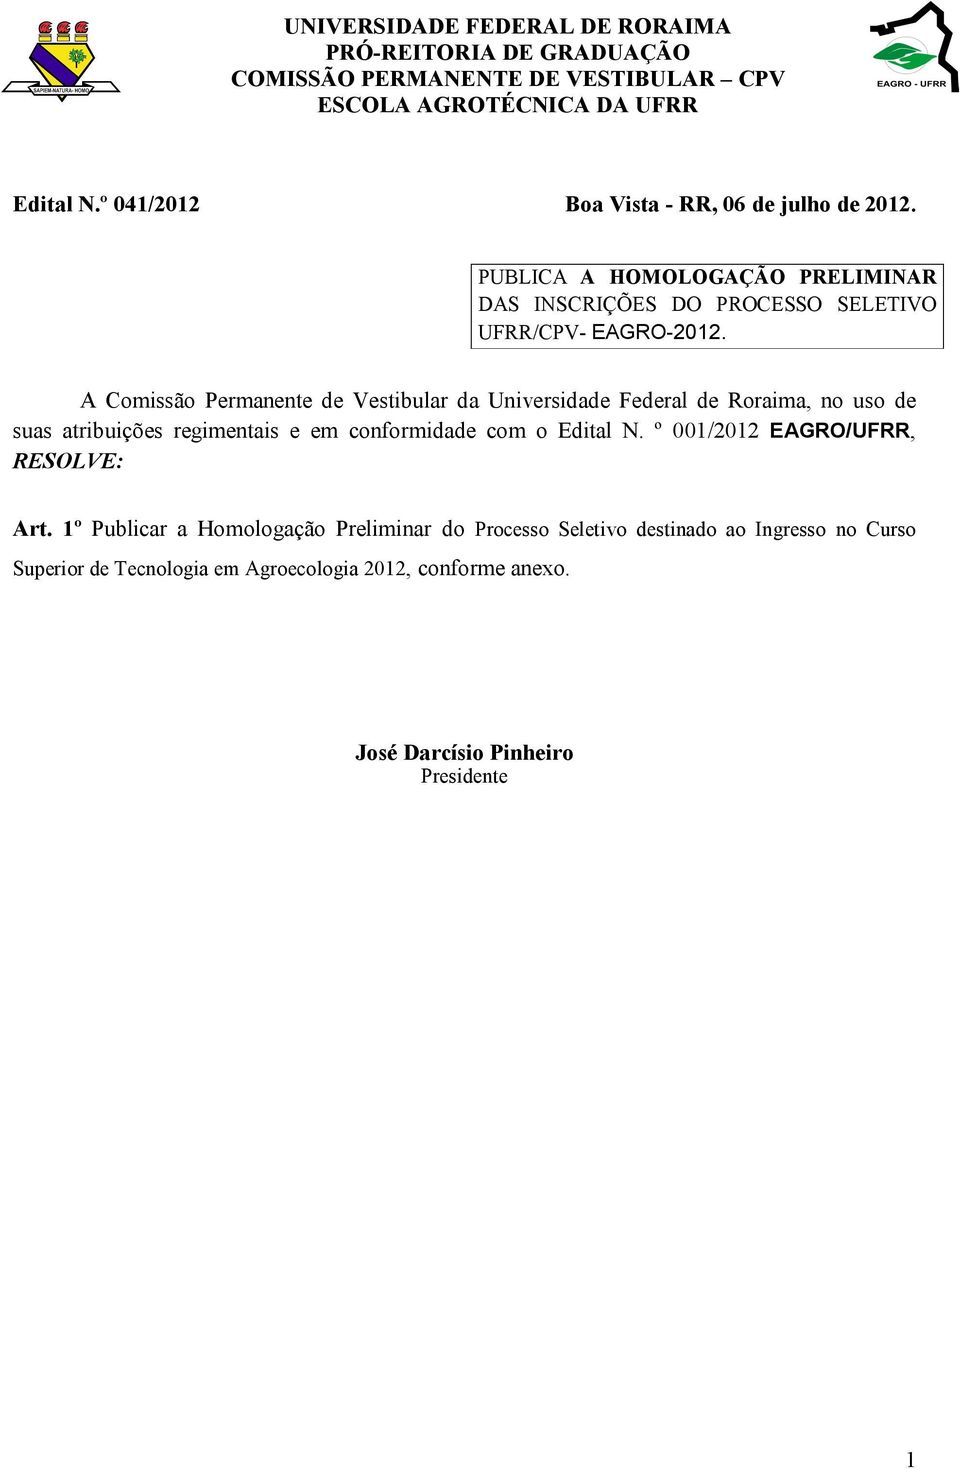 A Comissão Permanente de Vestibular da Universidade Federal de Roraima, no uso de suas atribuições regimentais e em conformidade